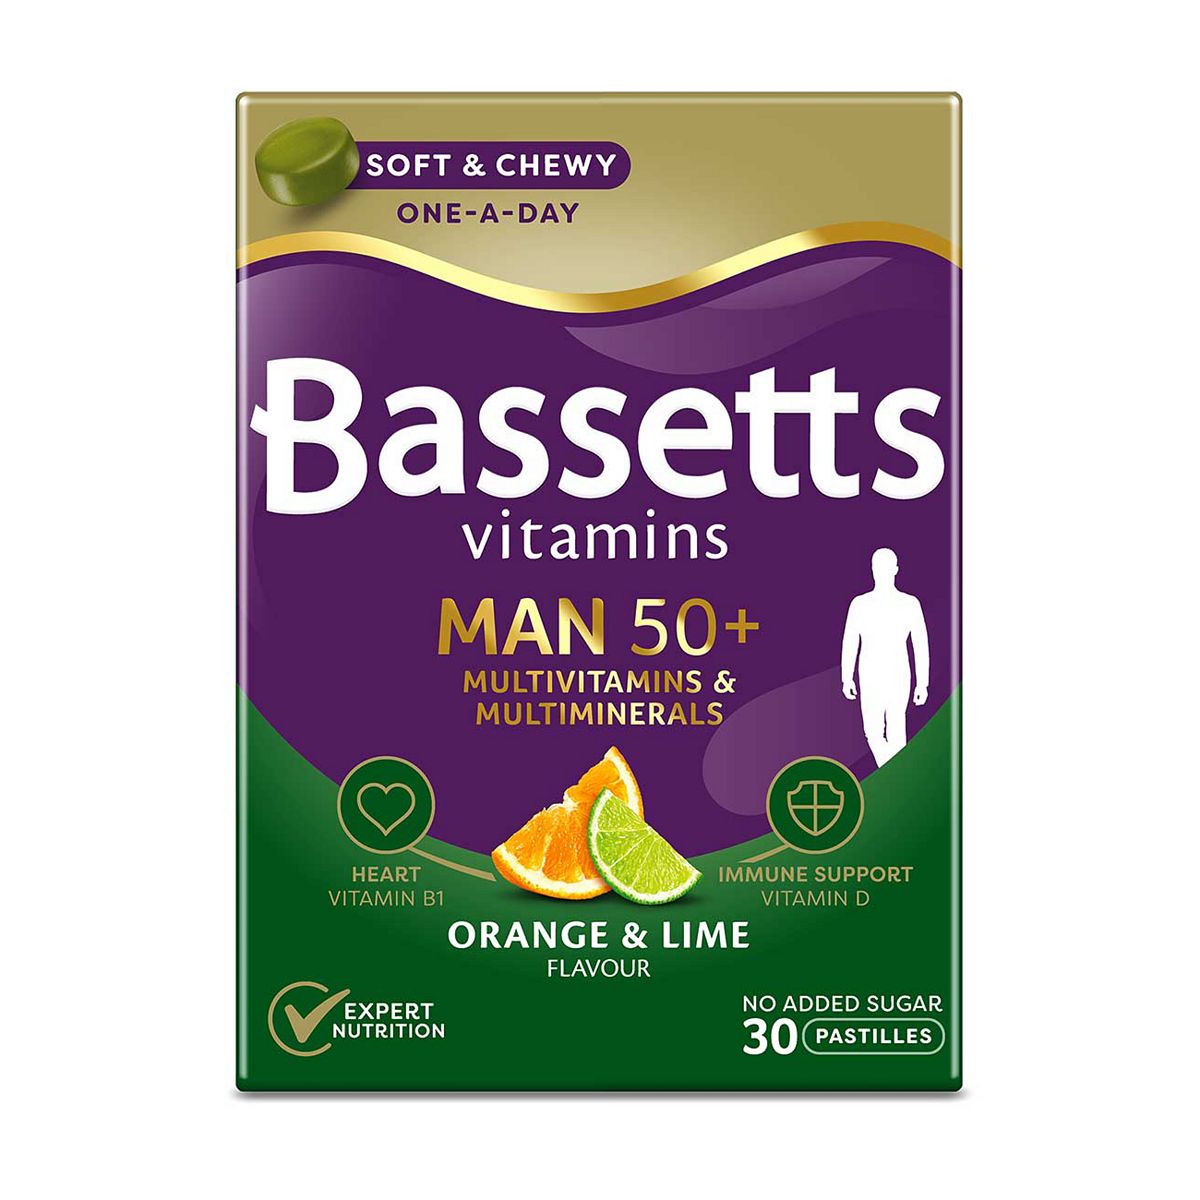 Bassetts Vitamins Man 50+ Orange & Lime Flavour – 30 Pastilles flour Boots   